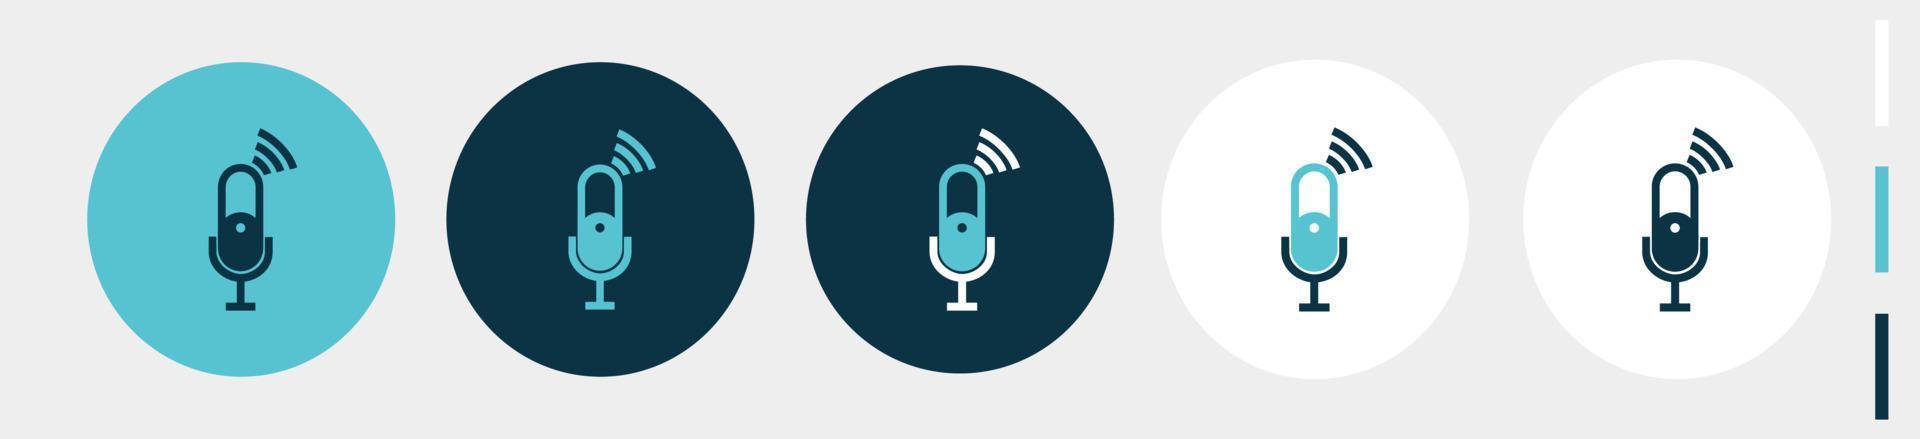 microfoon met signaal. podcastpictogrammen voor uitzending. geïsoleerd op wit vector